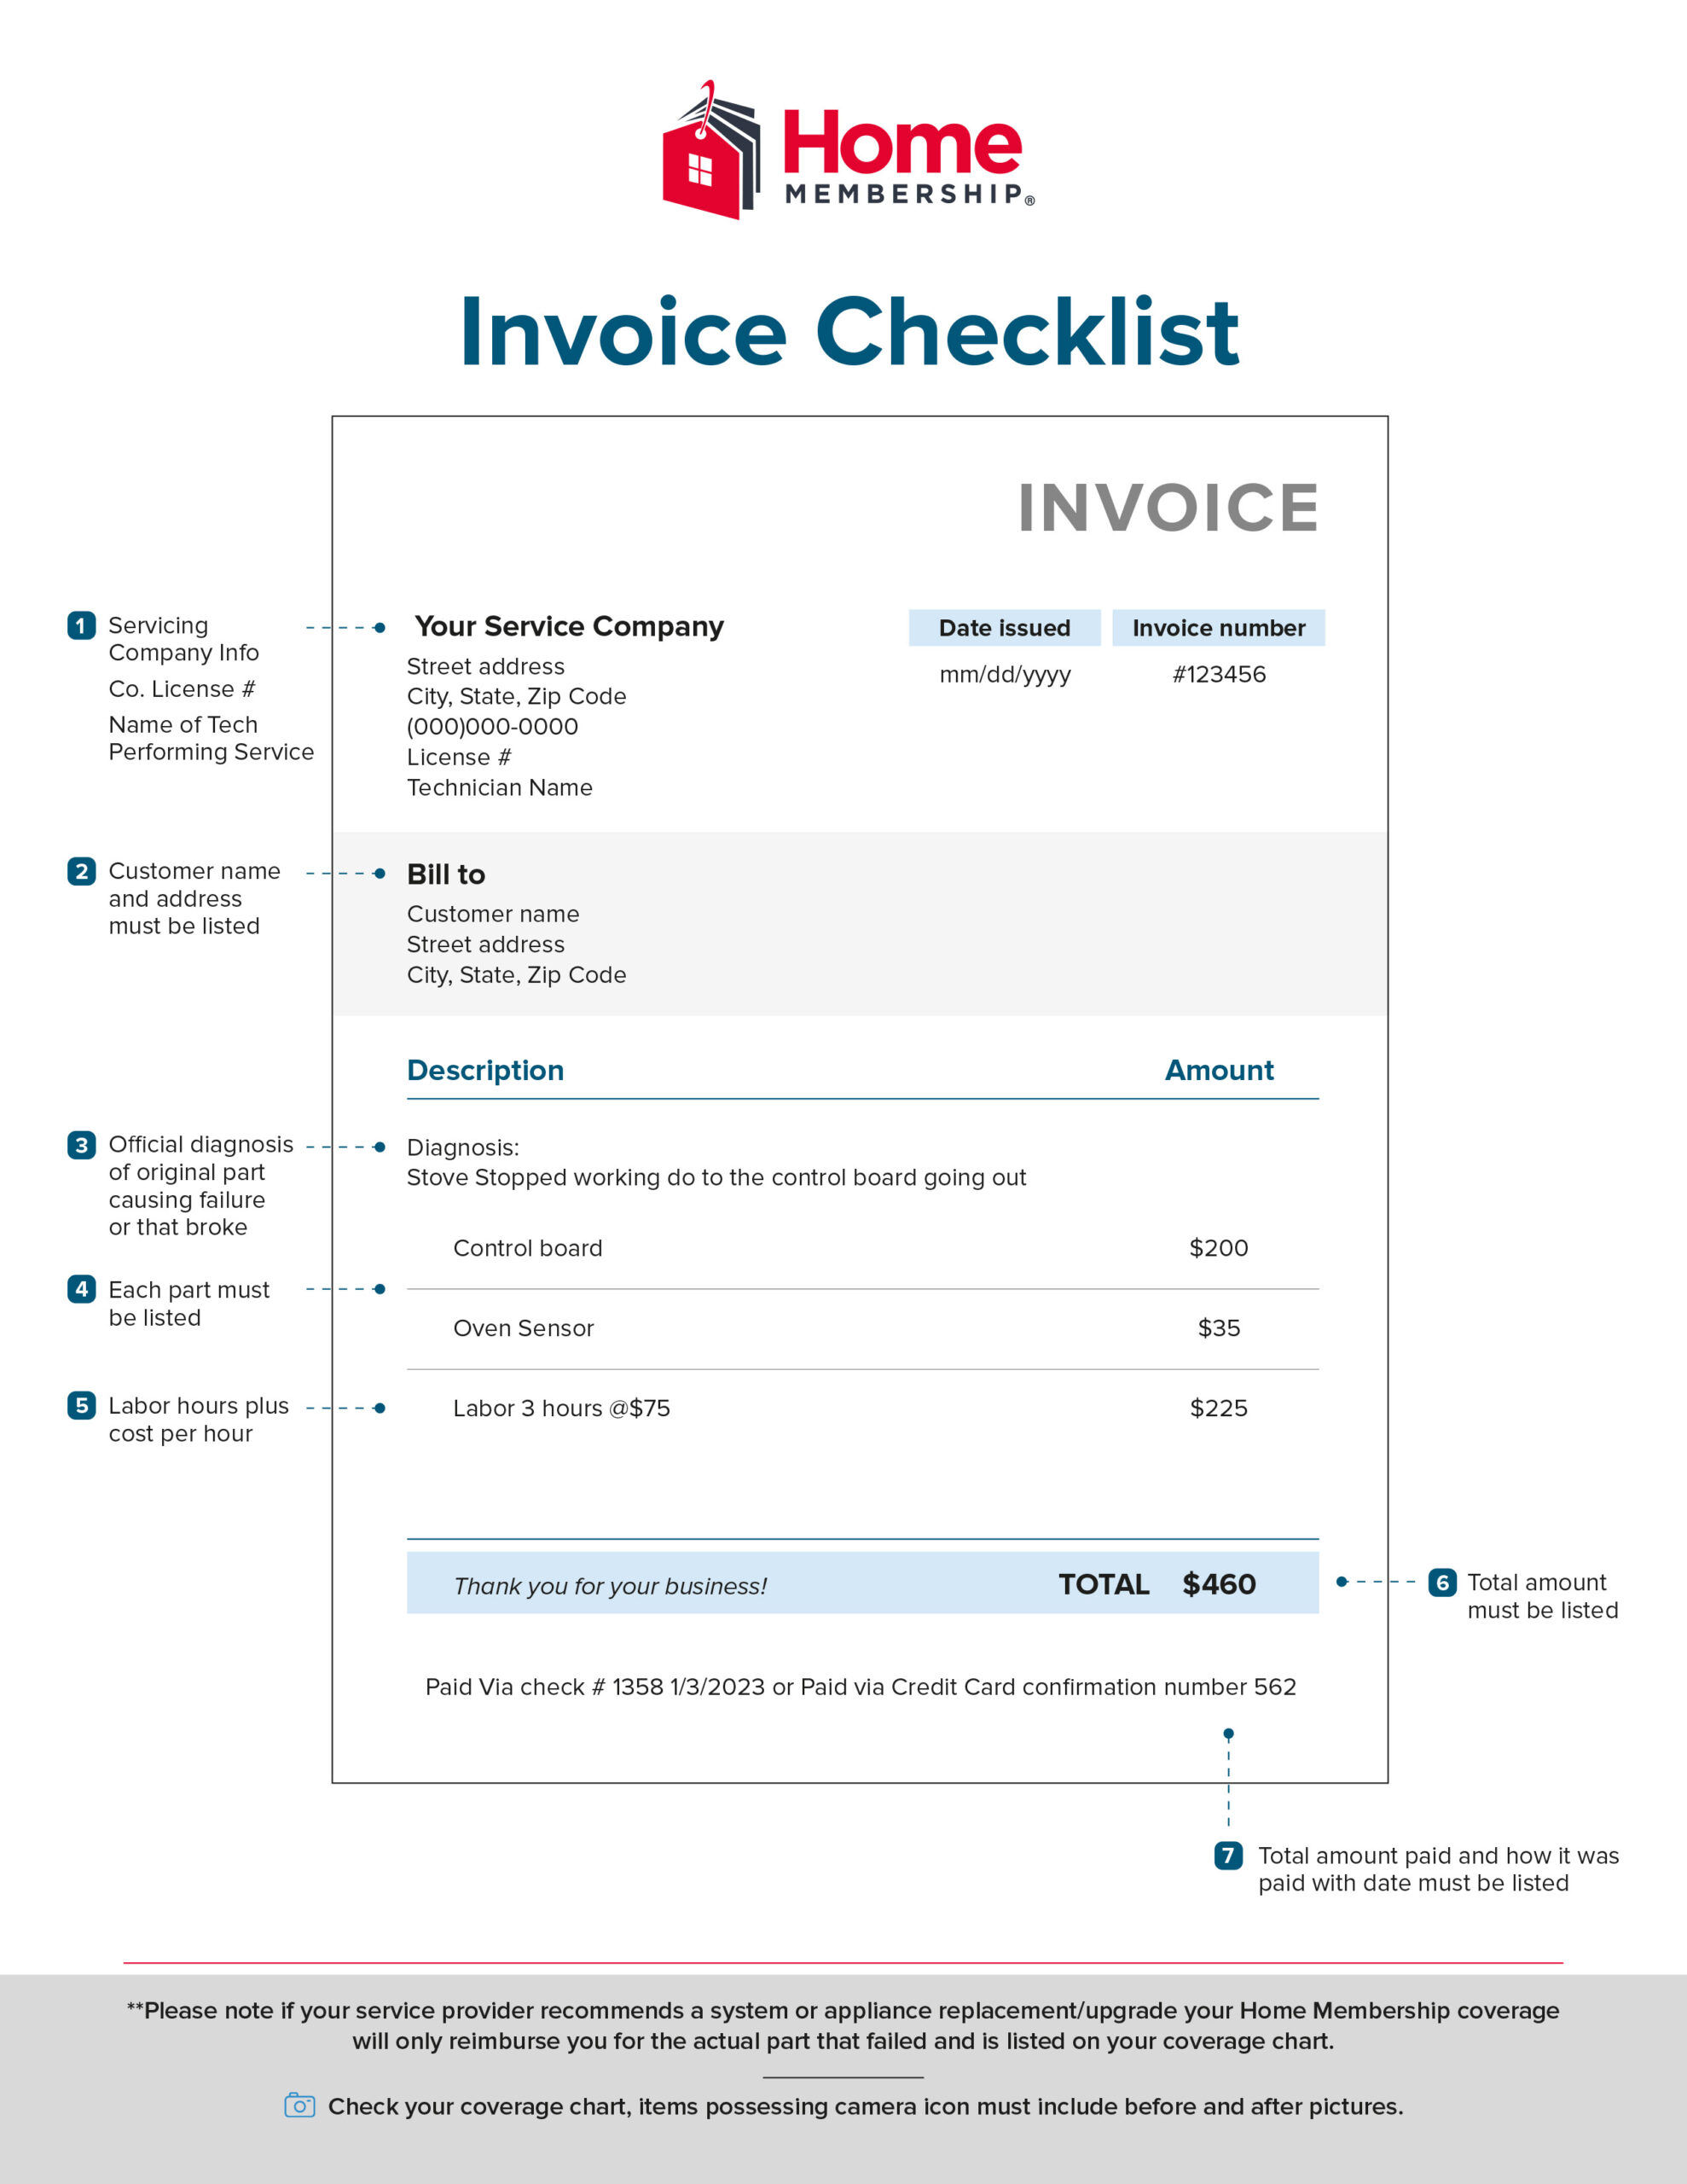 AOA-Invoice Checklist-v2